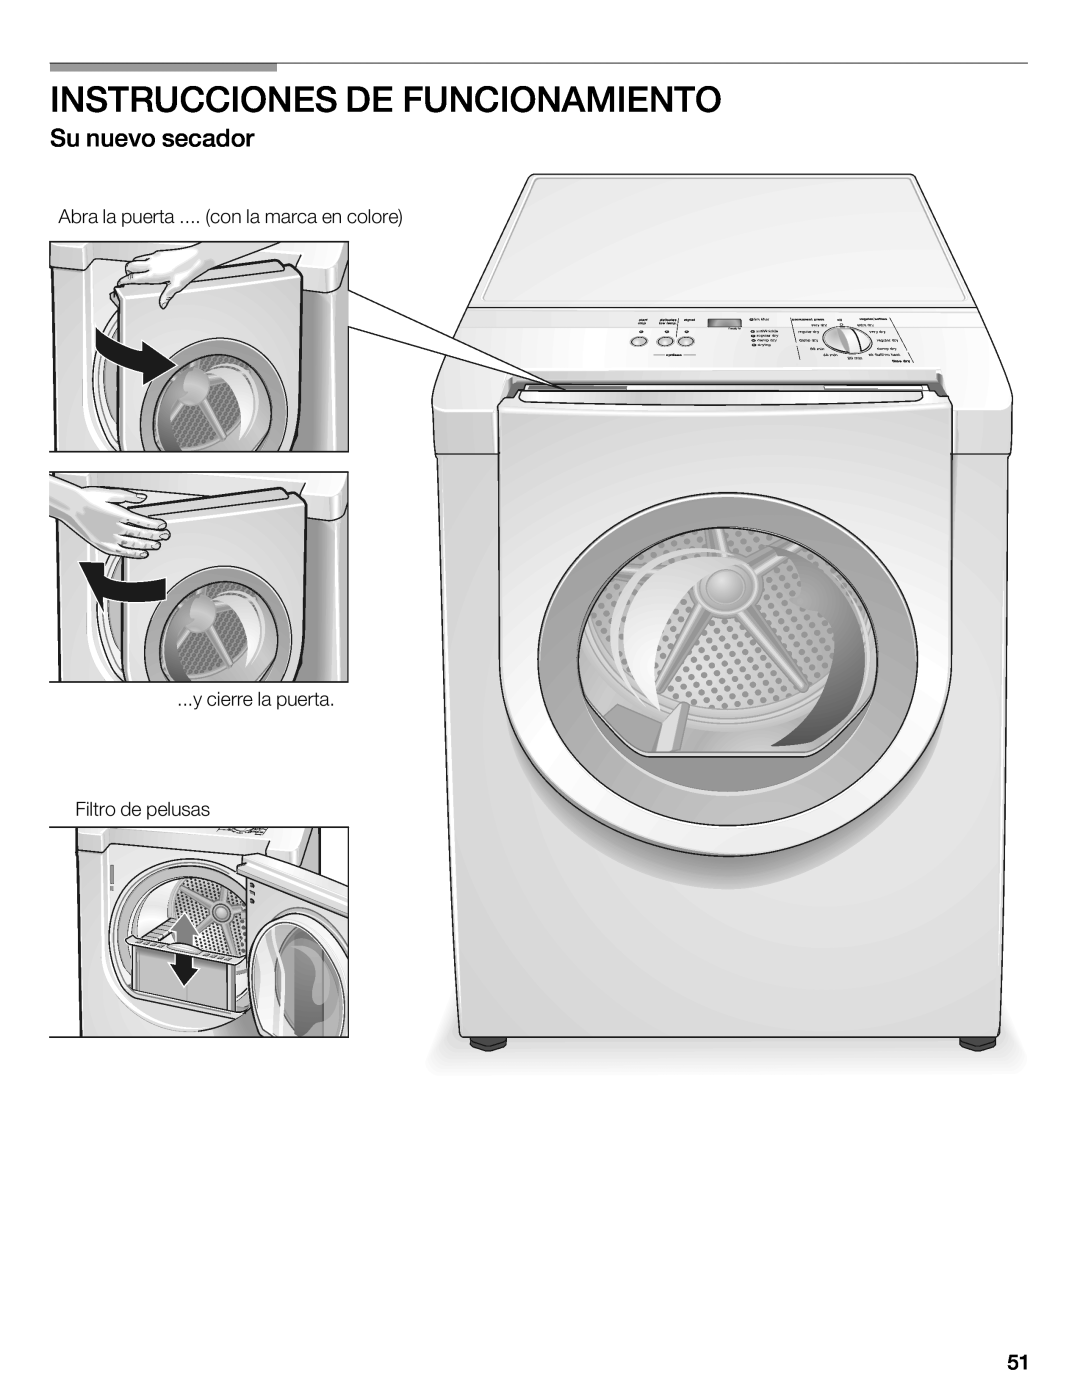 Bosch Appliances WTXD5321CN, WTXD5321US installation instructions Instrucciones De Funcionamiento, Su nuevo secador 